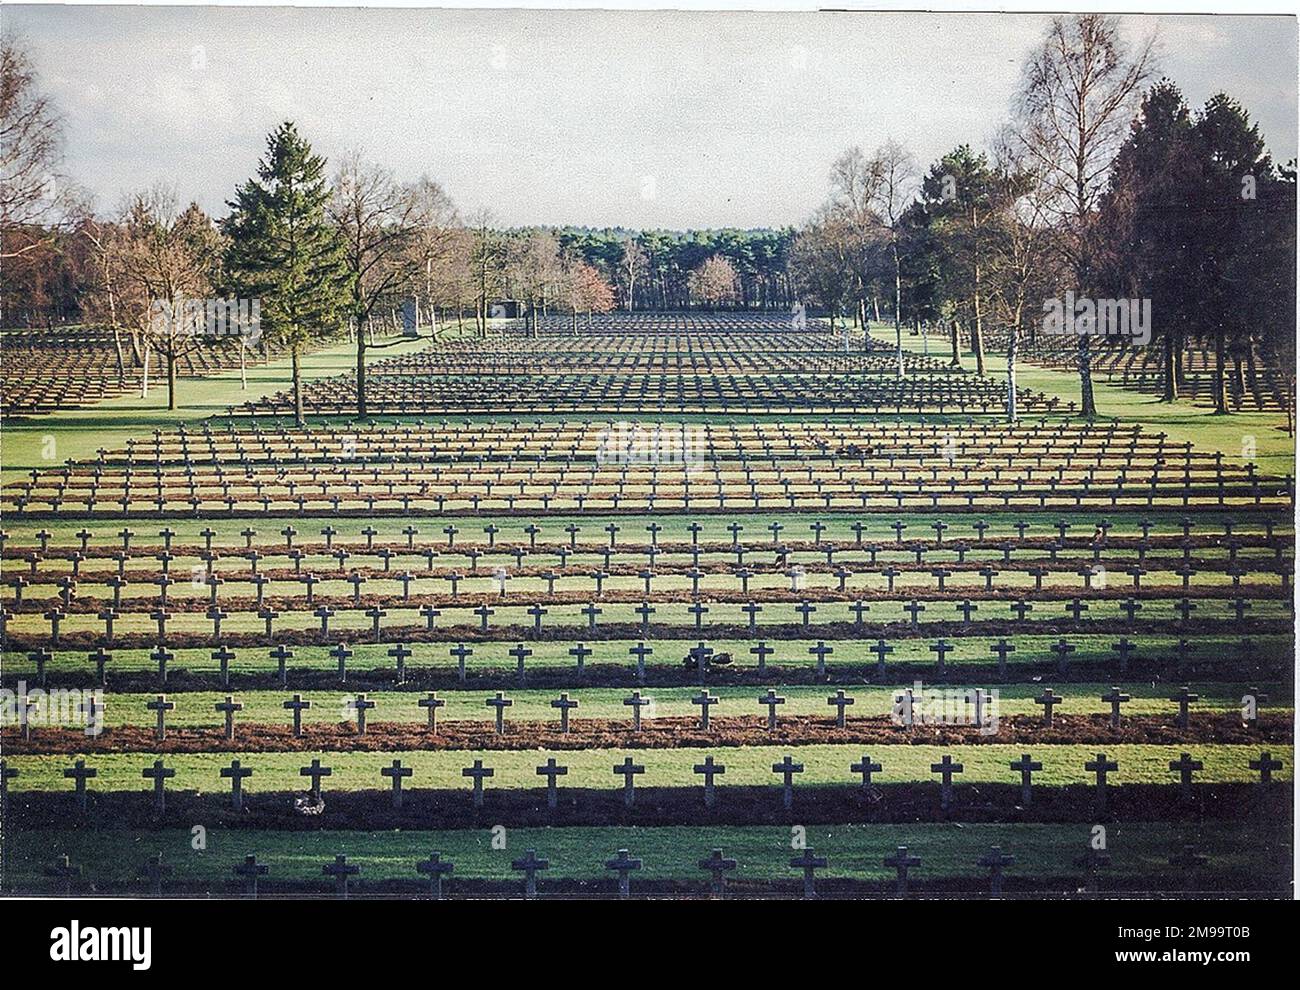 Originariamente un cimitero americano, questo è ora il più grande luogo di sepoltura tedesco di WW2 km al di fuori della Germania. Contiene le tombe di 38.962 soldati della guerra del '39-'45 e 541 della guerra del '14-'18. Inizialmente un cimitero americano temporaneo, fu ceduto ai tedeschi durante il '46-'47. Le autorità belghe hanno poi trasferito a Lommel tutti i soldati tedeschi uccisi in Belgio, nonché le sepolture della prima guerra mondiale originariamente realizzate a Leopoldsburg. Una croce fu eretta ogni due sepolture in modo che quasi 20.000 croci coprivano il sito di 16 ettari. Tra il 1978-80 le targhette originali dello smalto furono chan Foto Stock